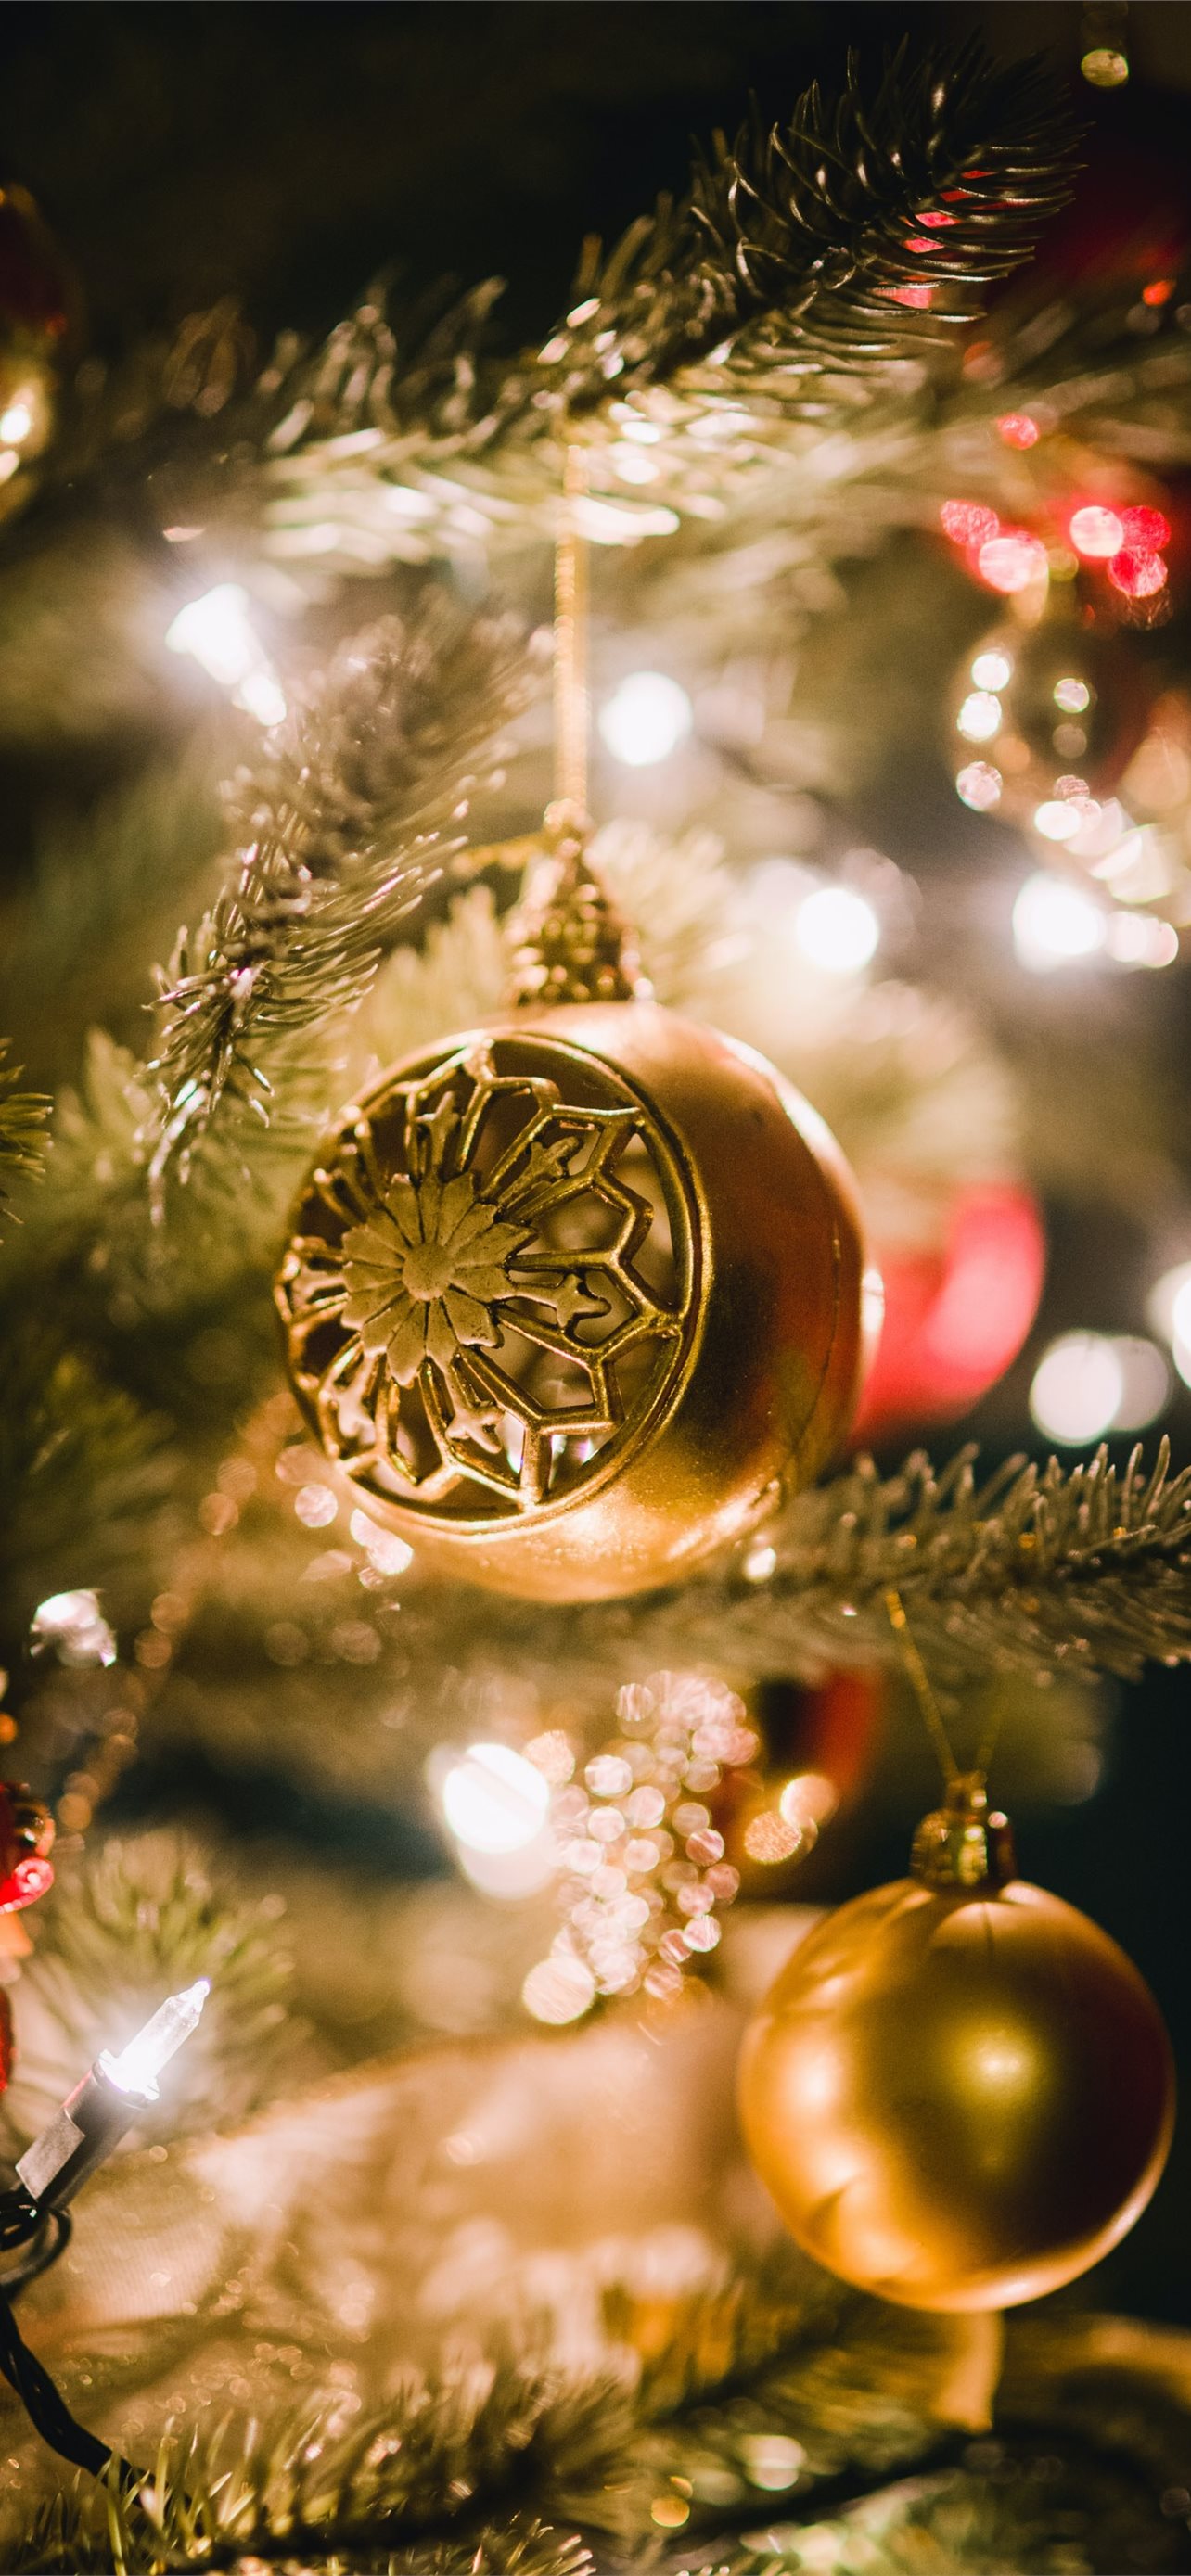 Bóng Noel: Những chiếc bóng Noel đẹp lung linh sẽ mang đến không khí Giáng sinh ấm áp cho mọi người. Hãy đến ngay để chiêm ngưỡng những hình ảnh tuyệt đẹp này.